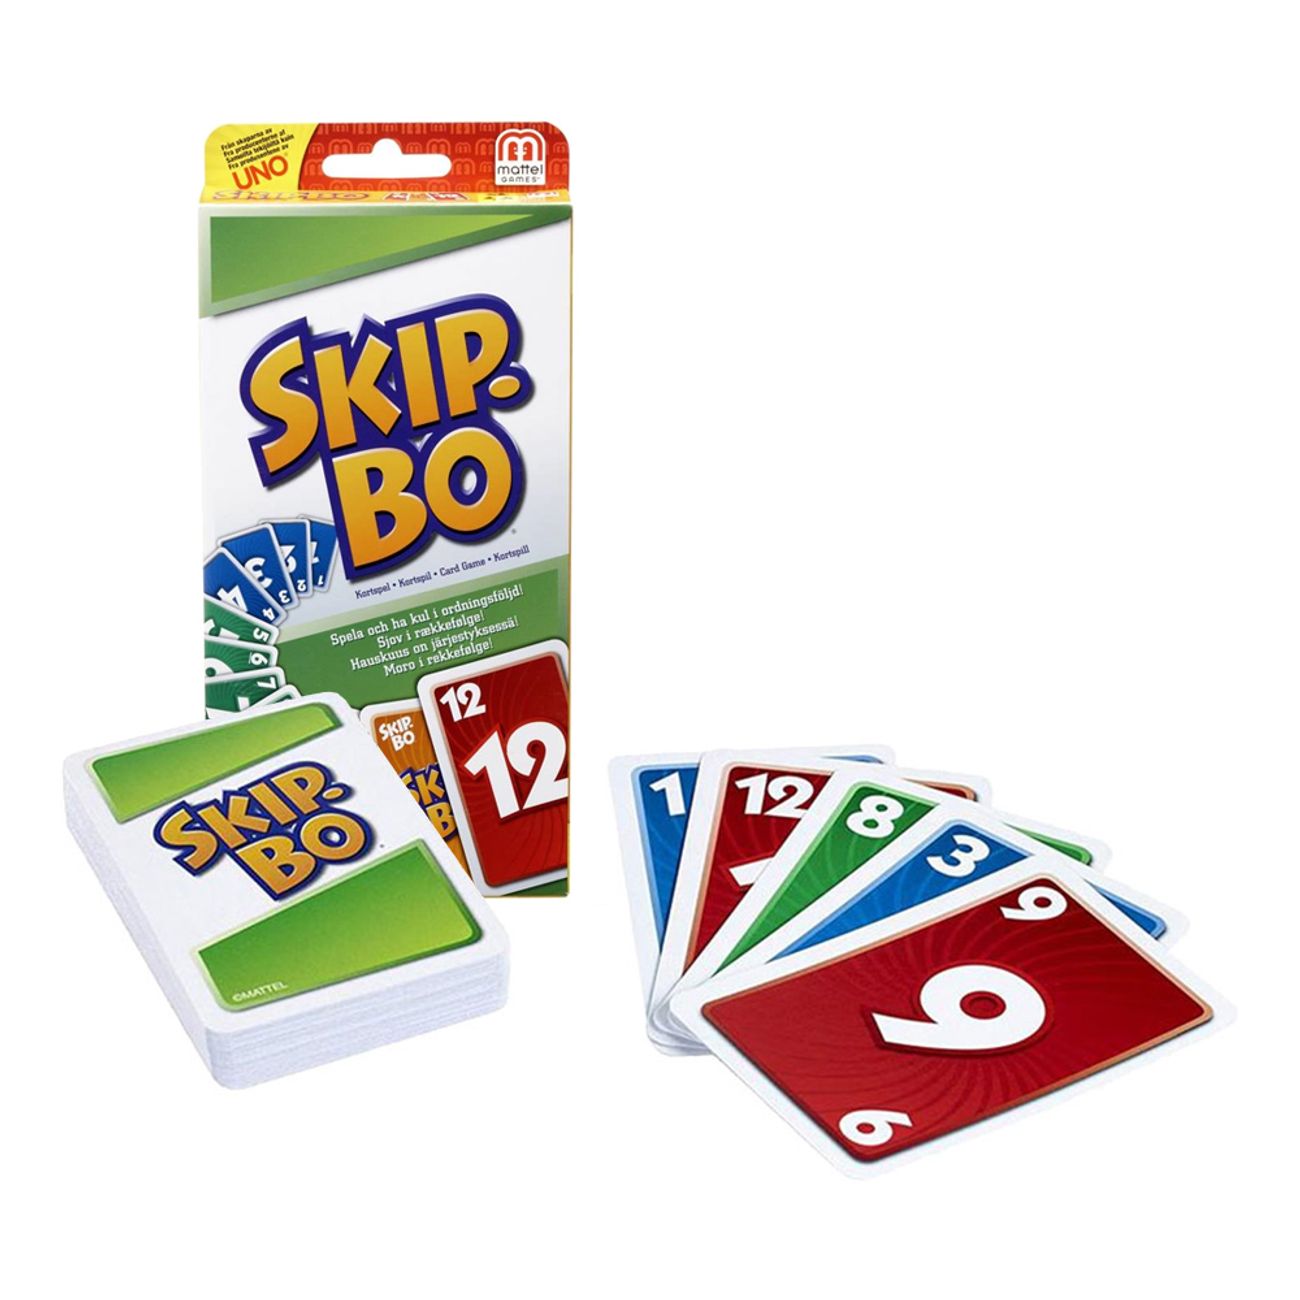 skip-bo-kortspel-79968-2